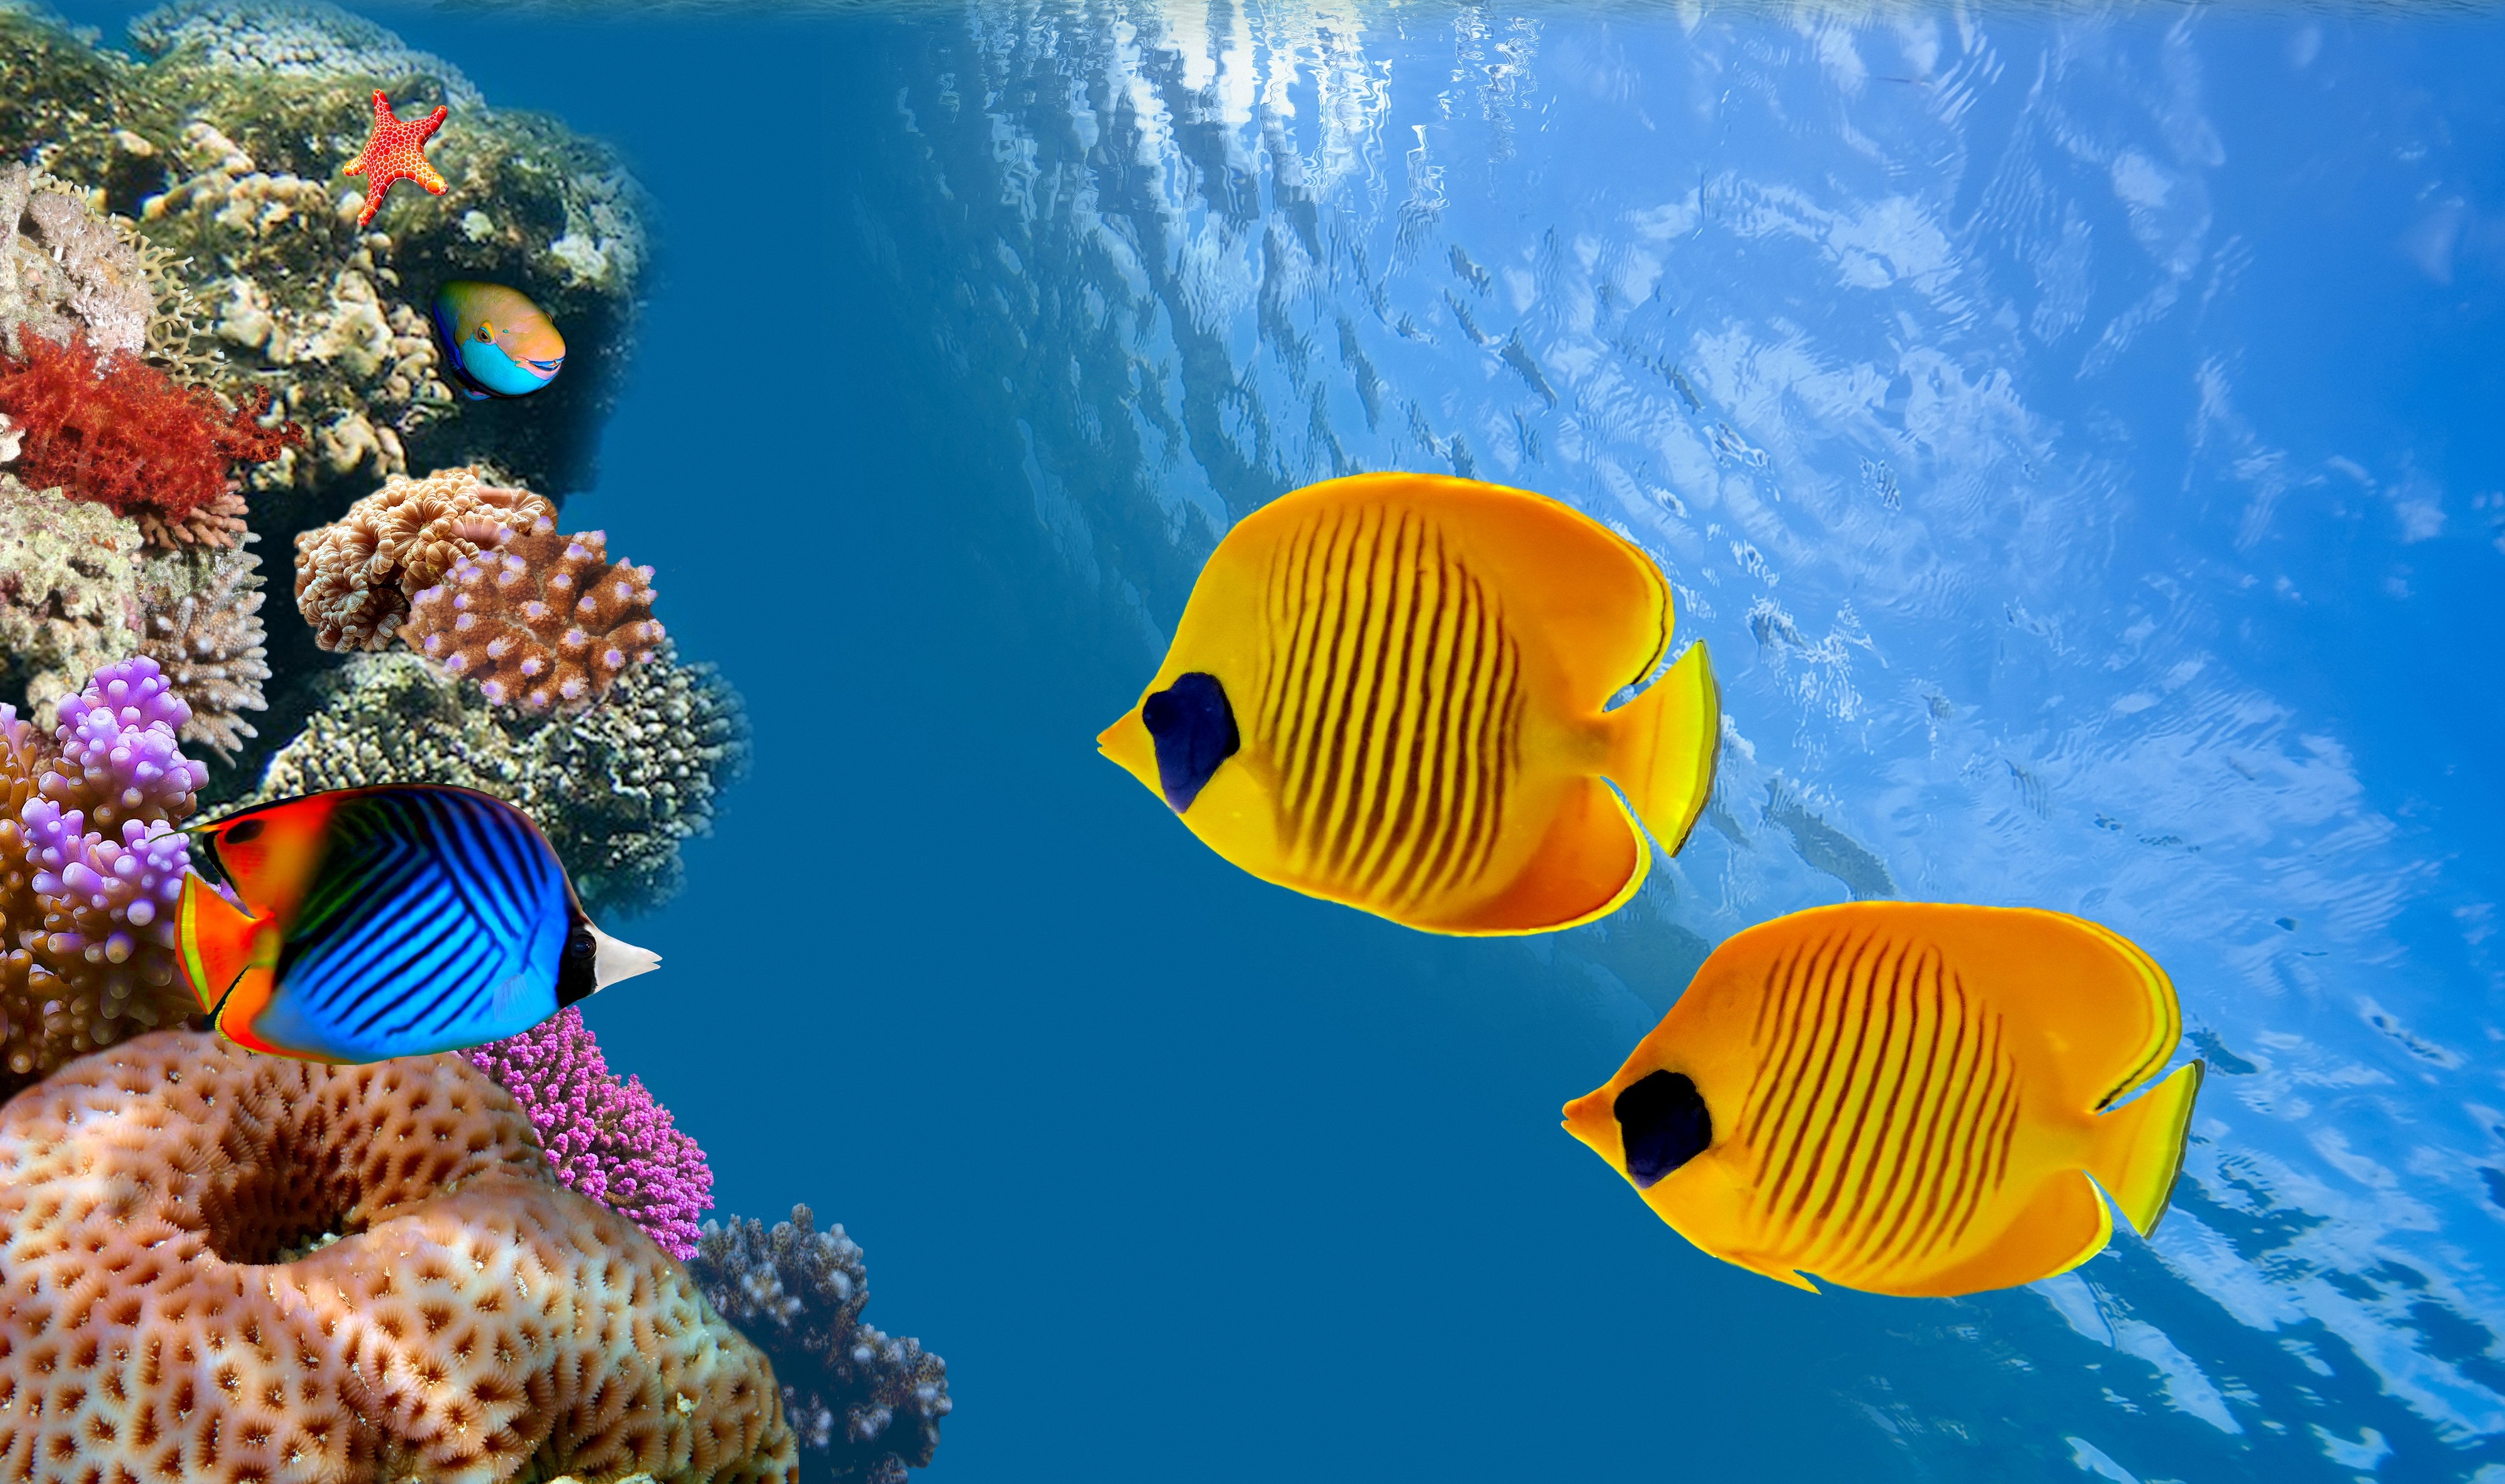 underwater hd wallpaper,fish,coral reef fish,underwater,marine biology,coral reef